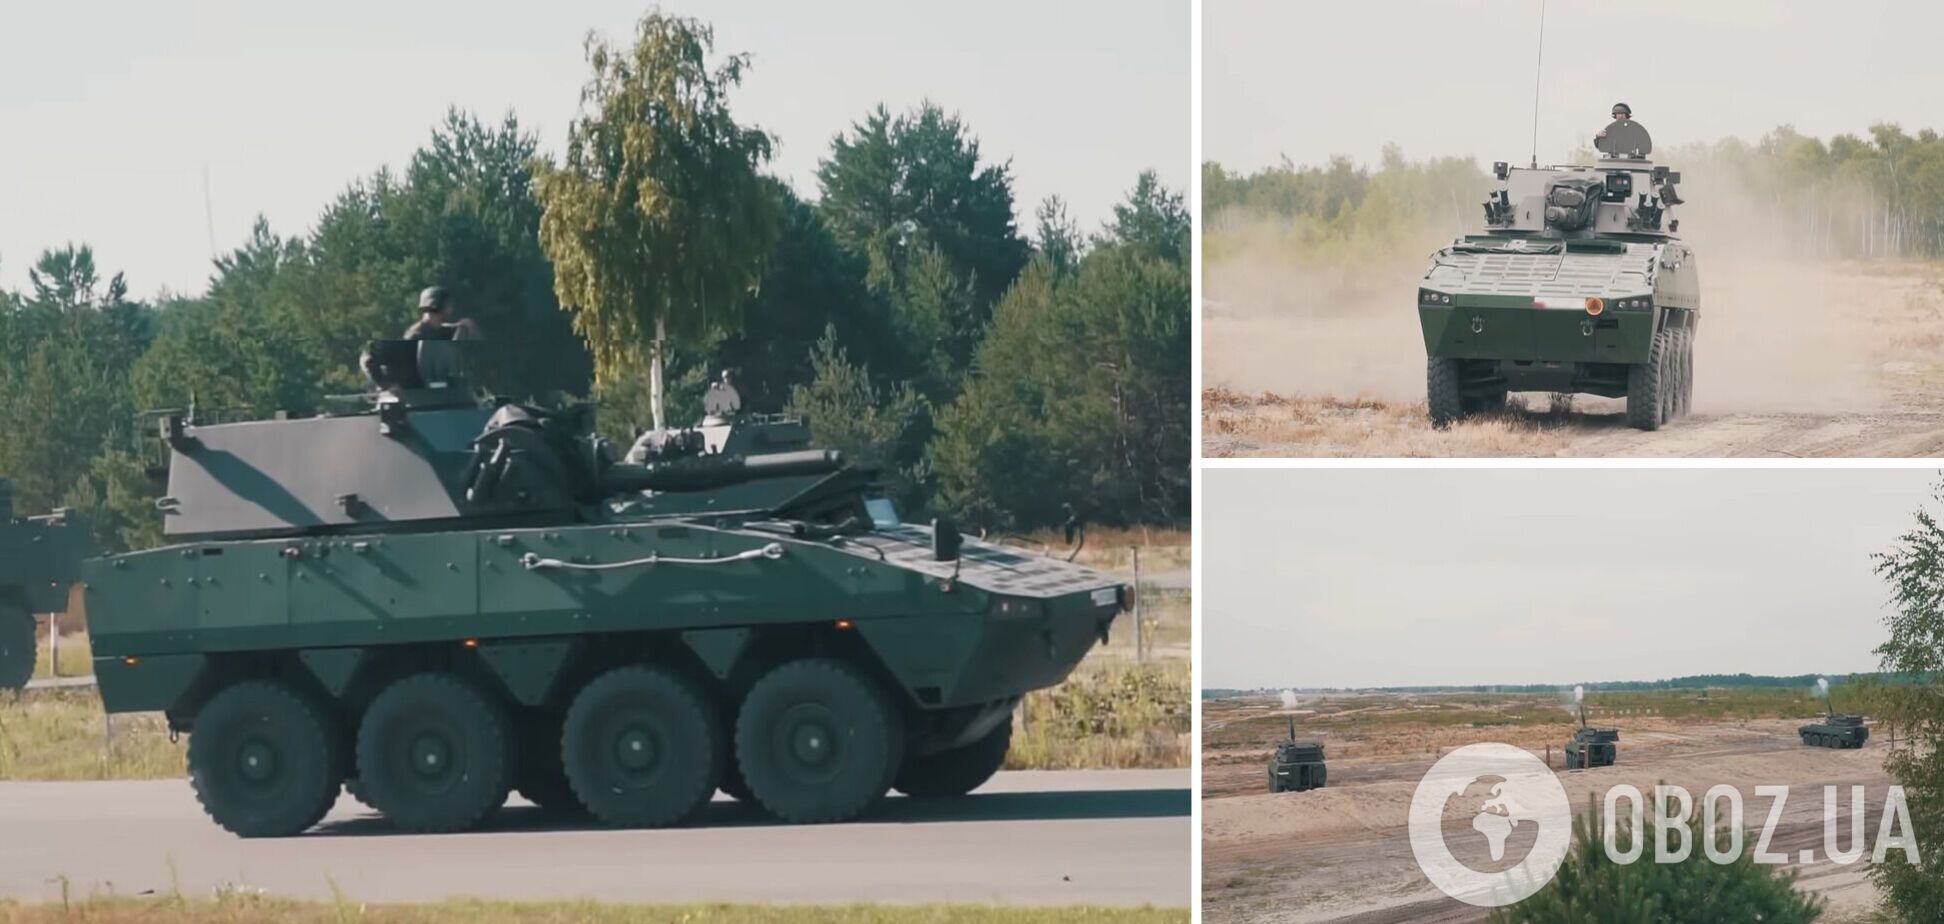 Польща передає ЗСУ три роти мінометних САУ Rak, які дуже потрібні на фронті саме зараз. Фото і відео